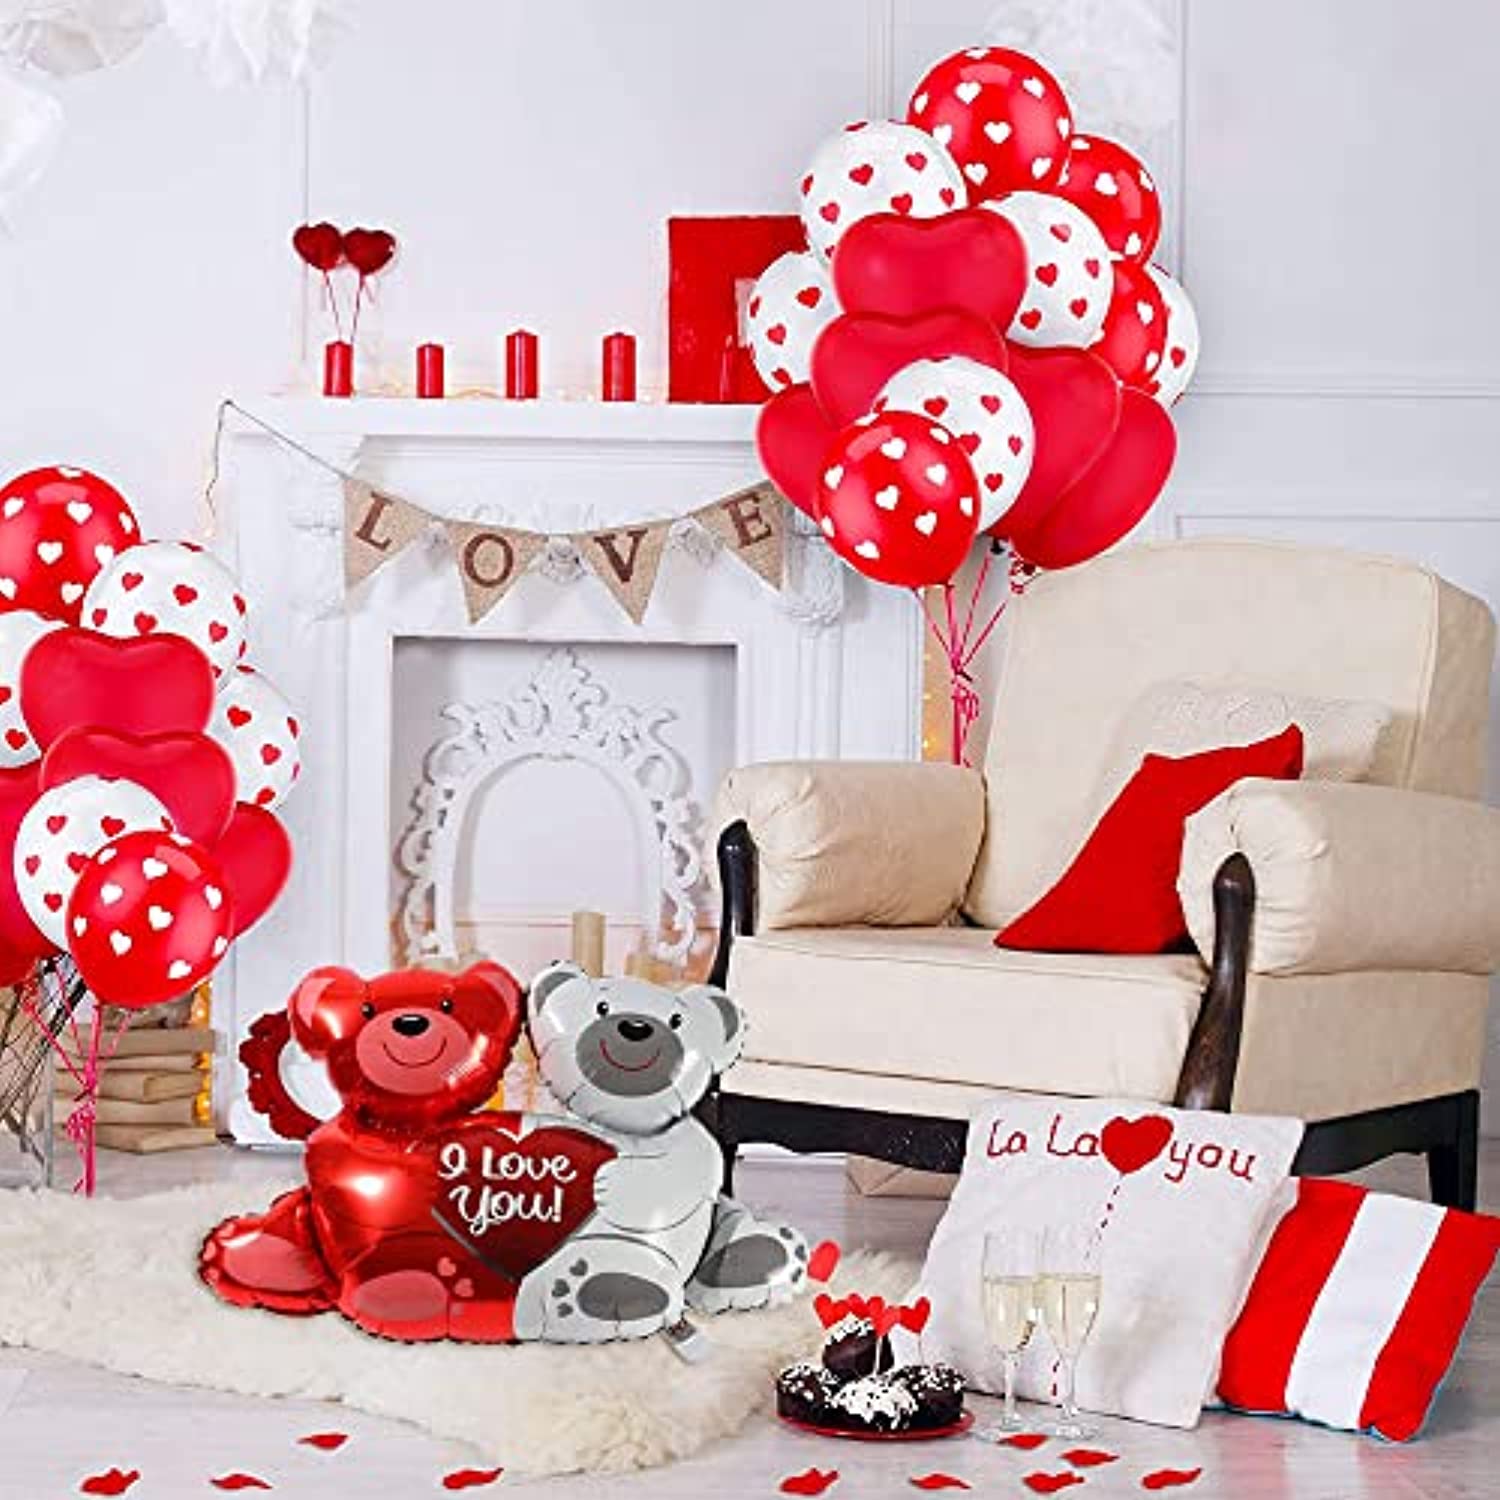 Kit Decorazioni a Tema San Valentino con Palloncini a Forma di Cuore Rosso  Metallizzato e Coriandoli - Idea Decorazione San Valentino per la Camera o  Casa